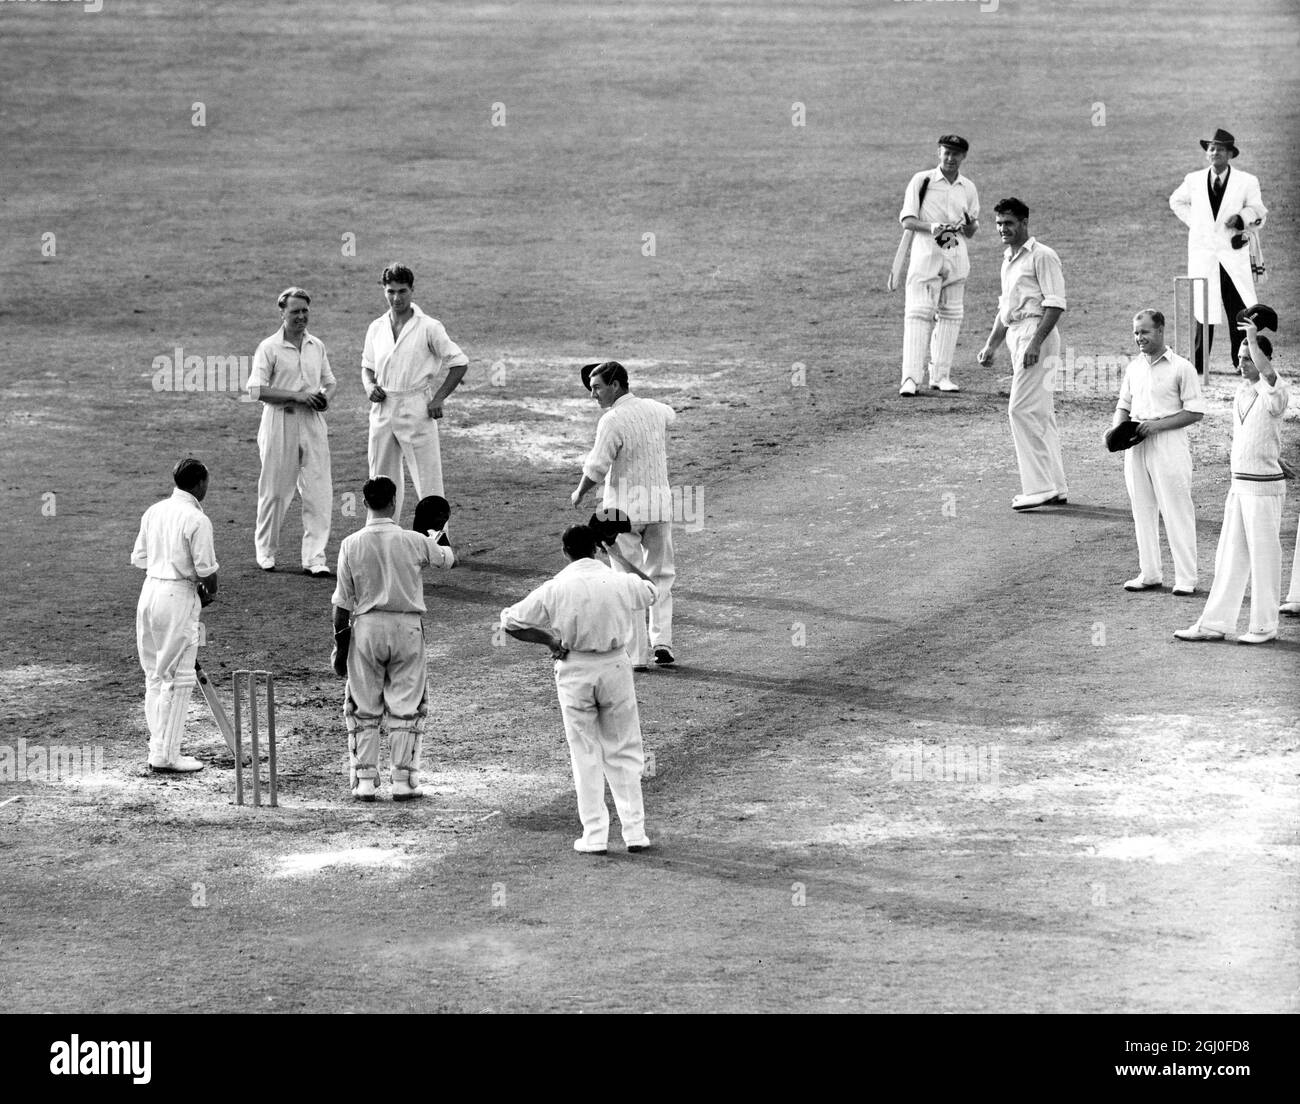 England gegen Australien Don Bradman wird von der englischen Mannschaft angefeuert, als er in seinem letzten Testspiel beim Oval herauskommt, um zu schlagen. Unmittelbar danach wurde er von Hollies für eine Ente geduckt. August 1948. Stockfoto